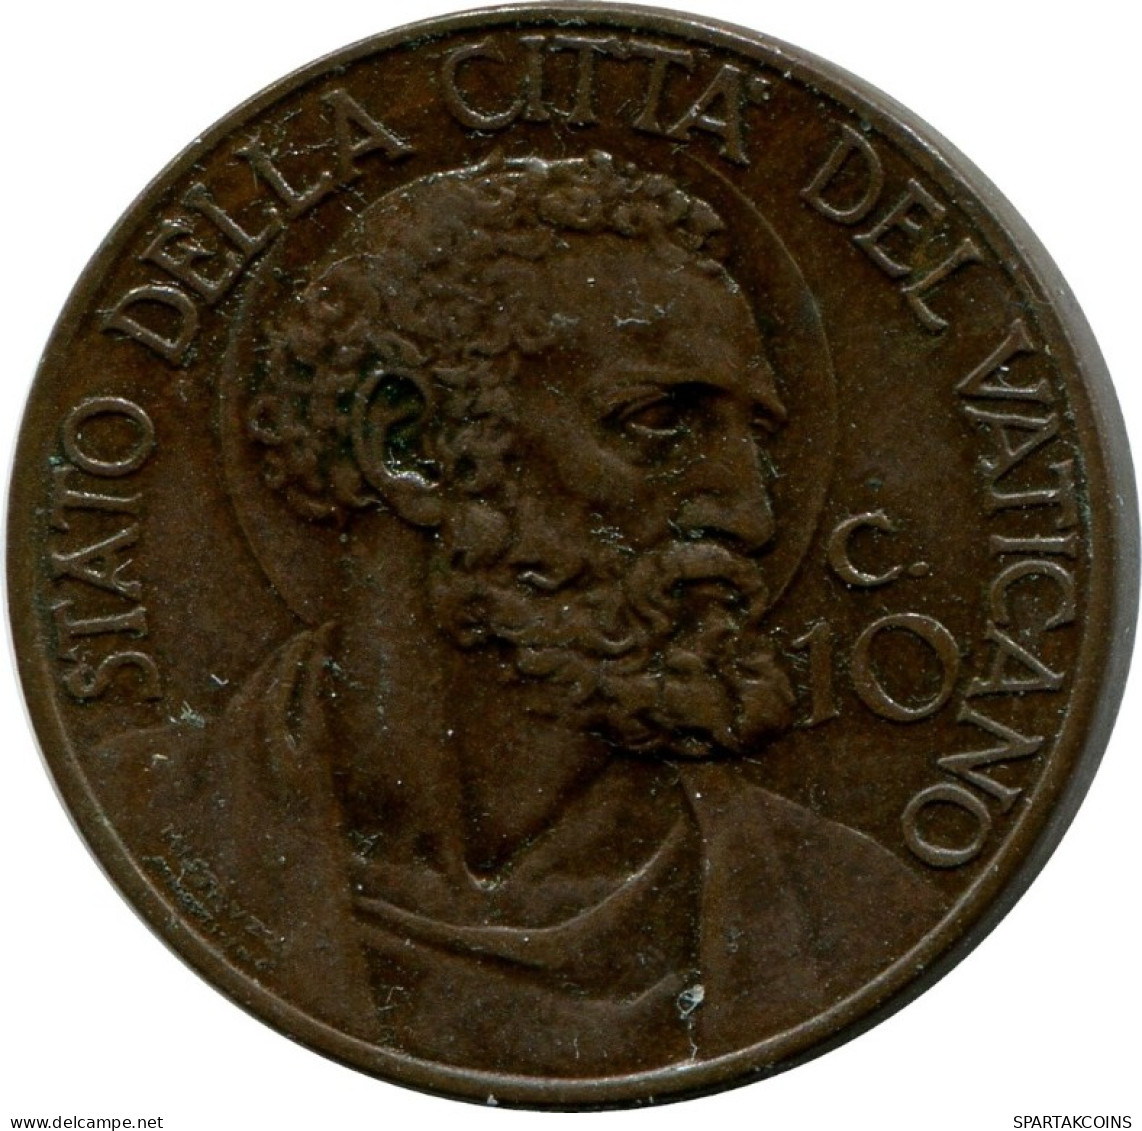 10 CENTESIMI 1933-34 VATICANO VATICAN Moneda Pius XI (1922-1939) #AH345.16.E.A - Vatican